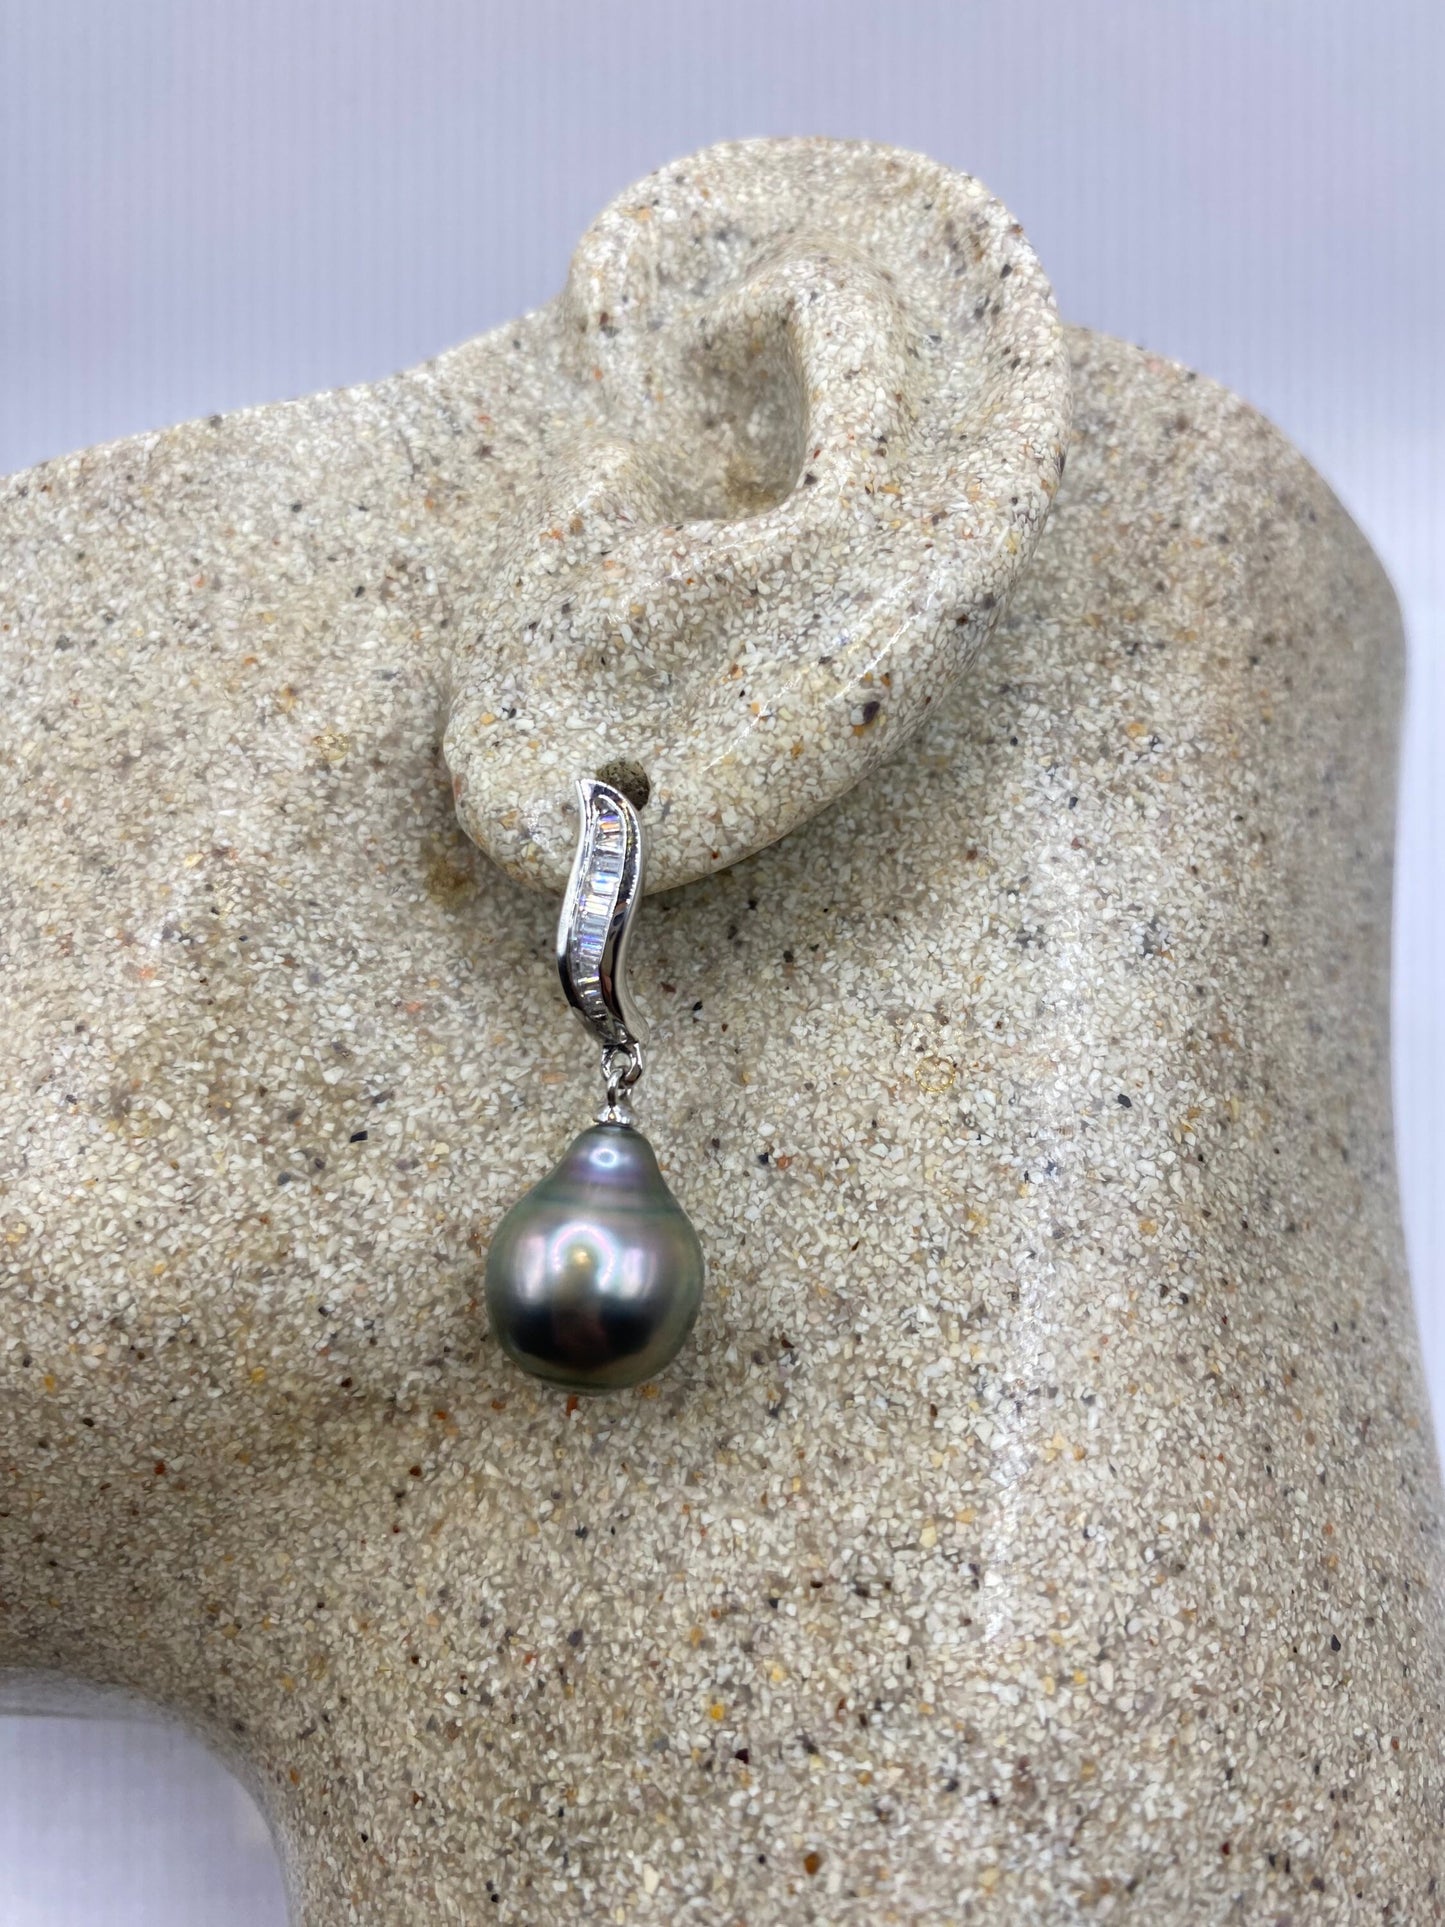 Vintage Genuine Black Pearl Sterling Silver Dangle Earrings